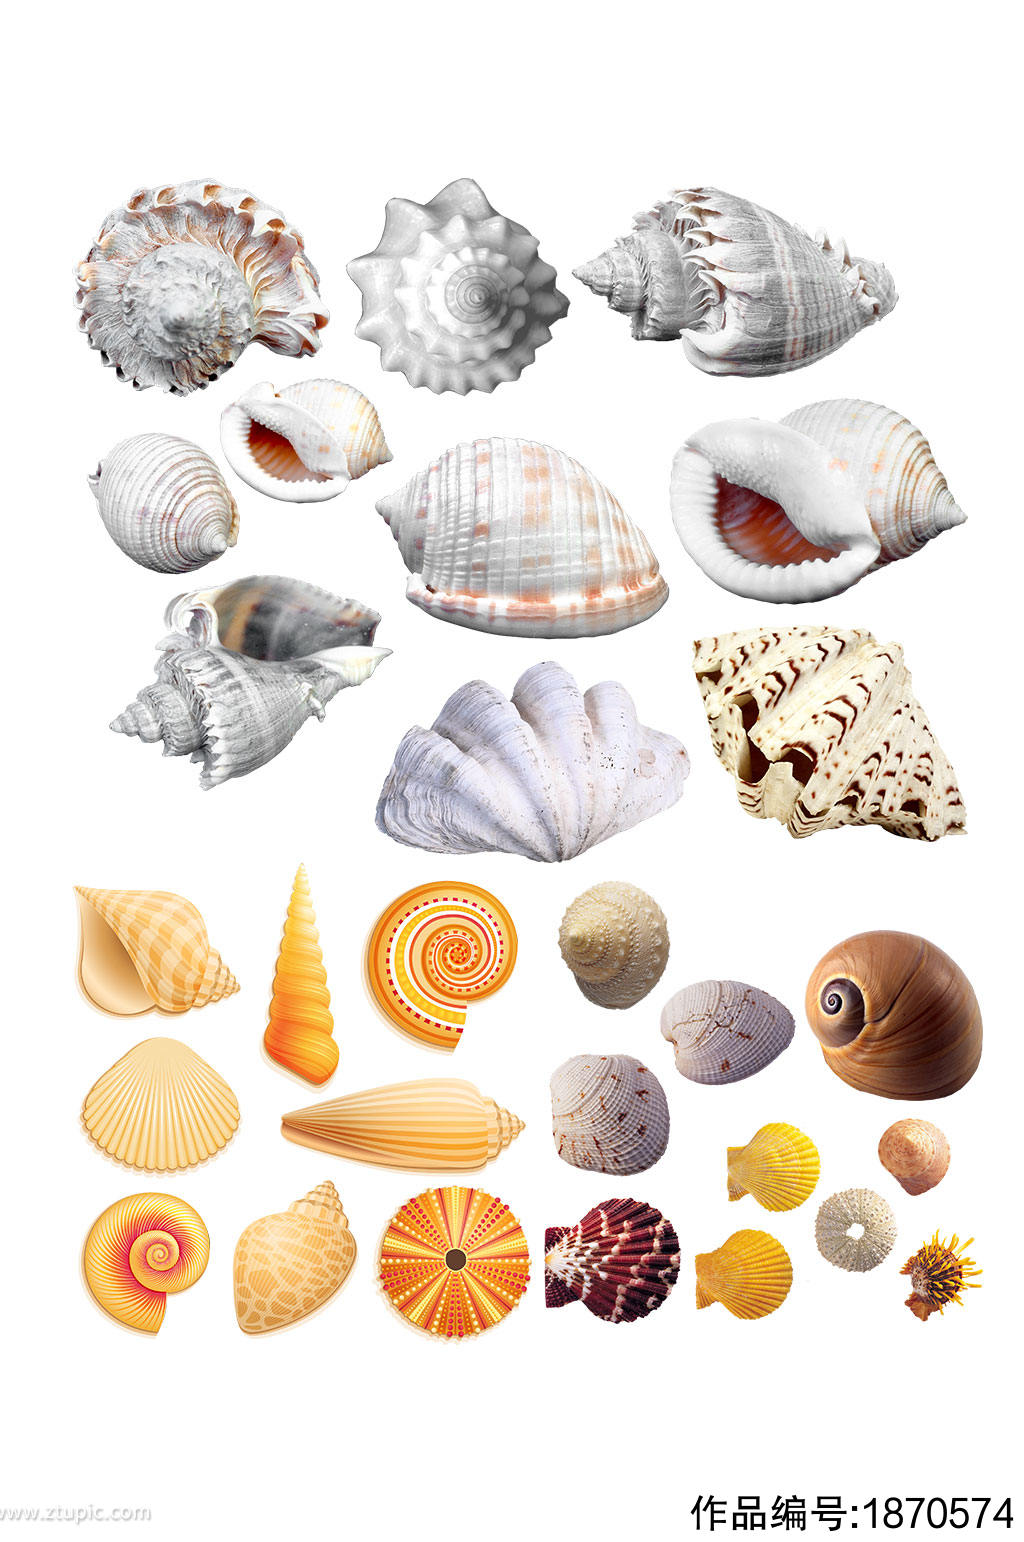 高清贝壳图片设计素材